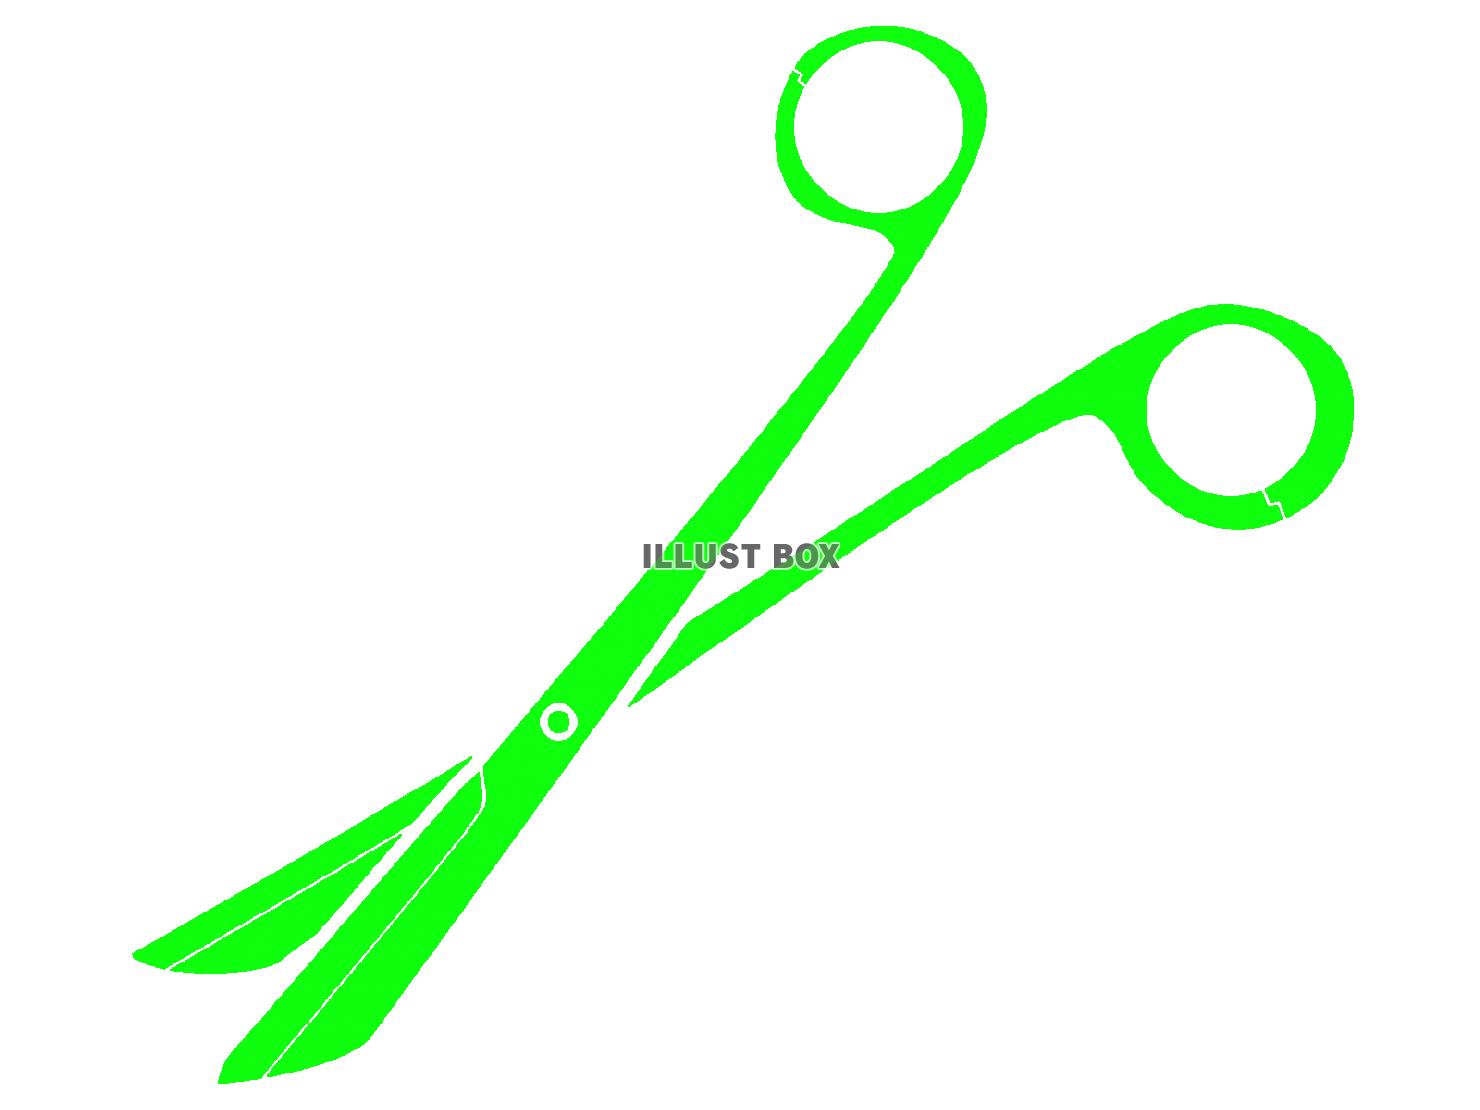 緑色モチーフの抜糸剪刀のシルエット